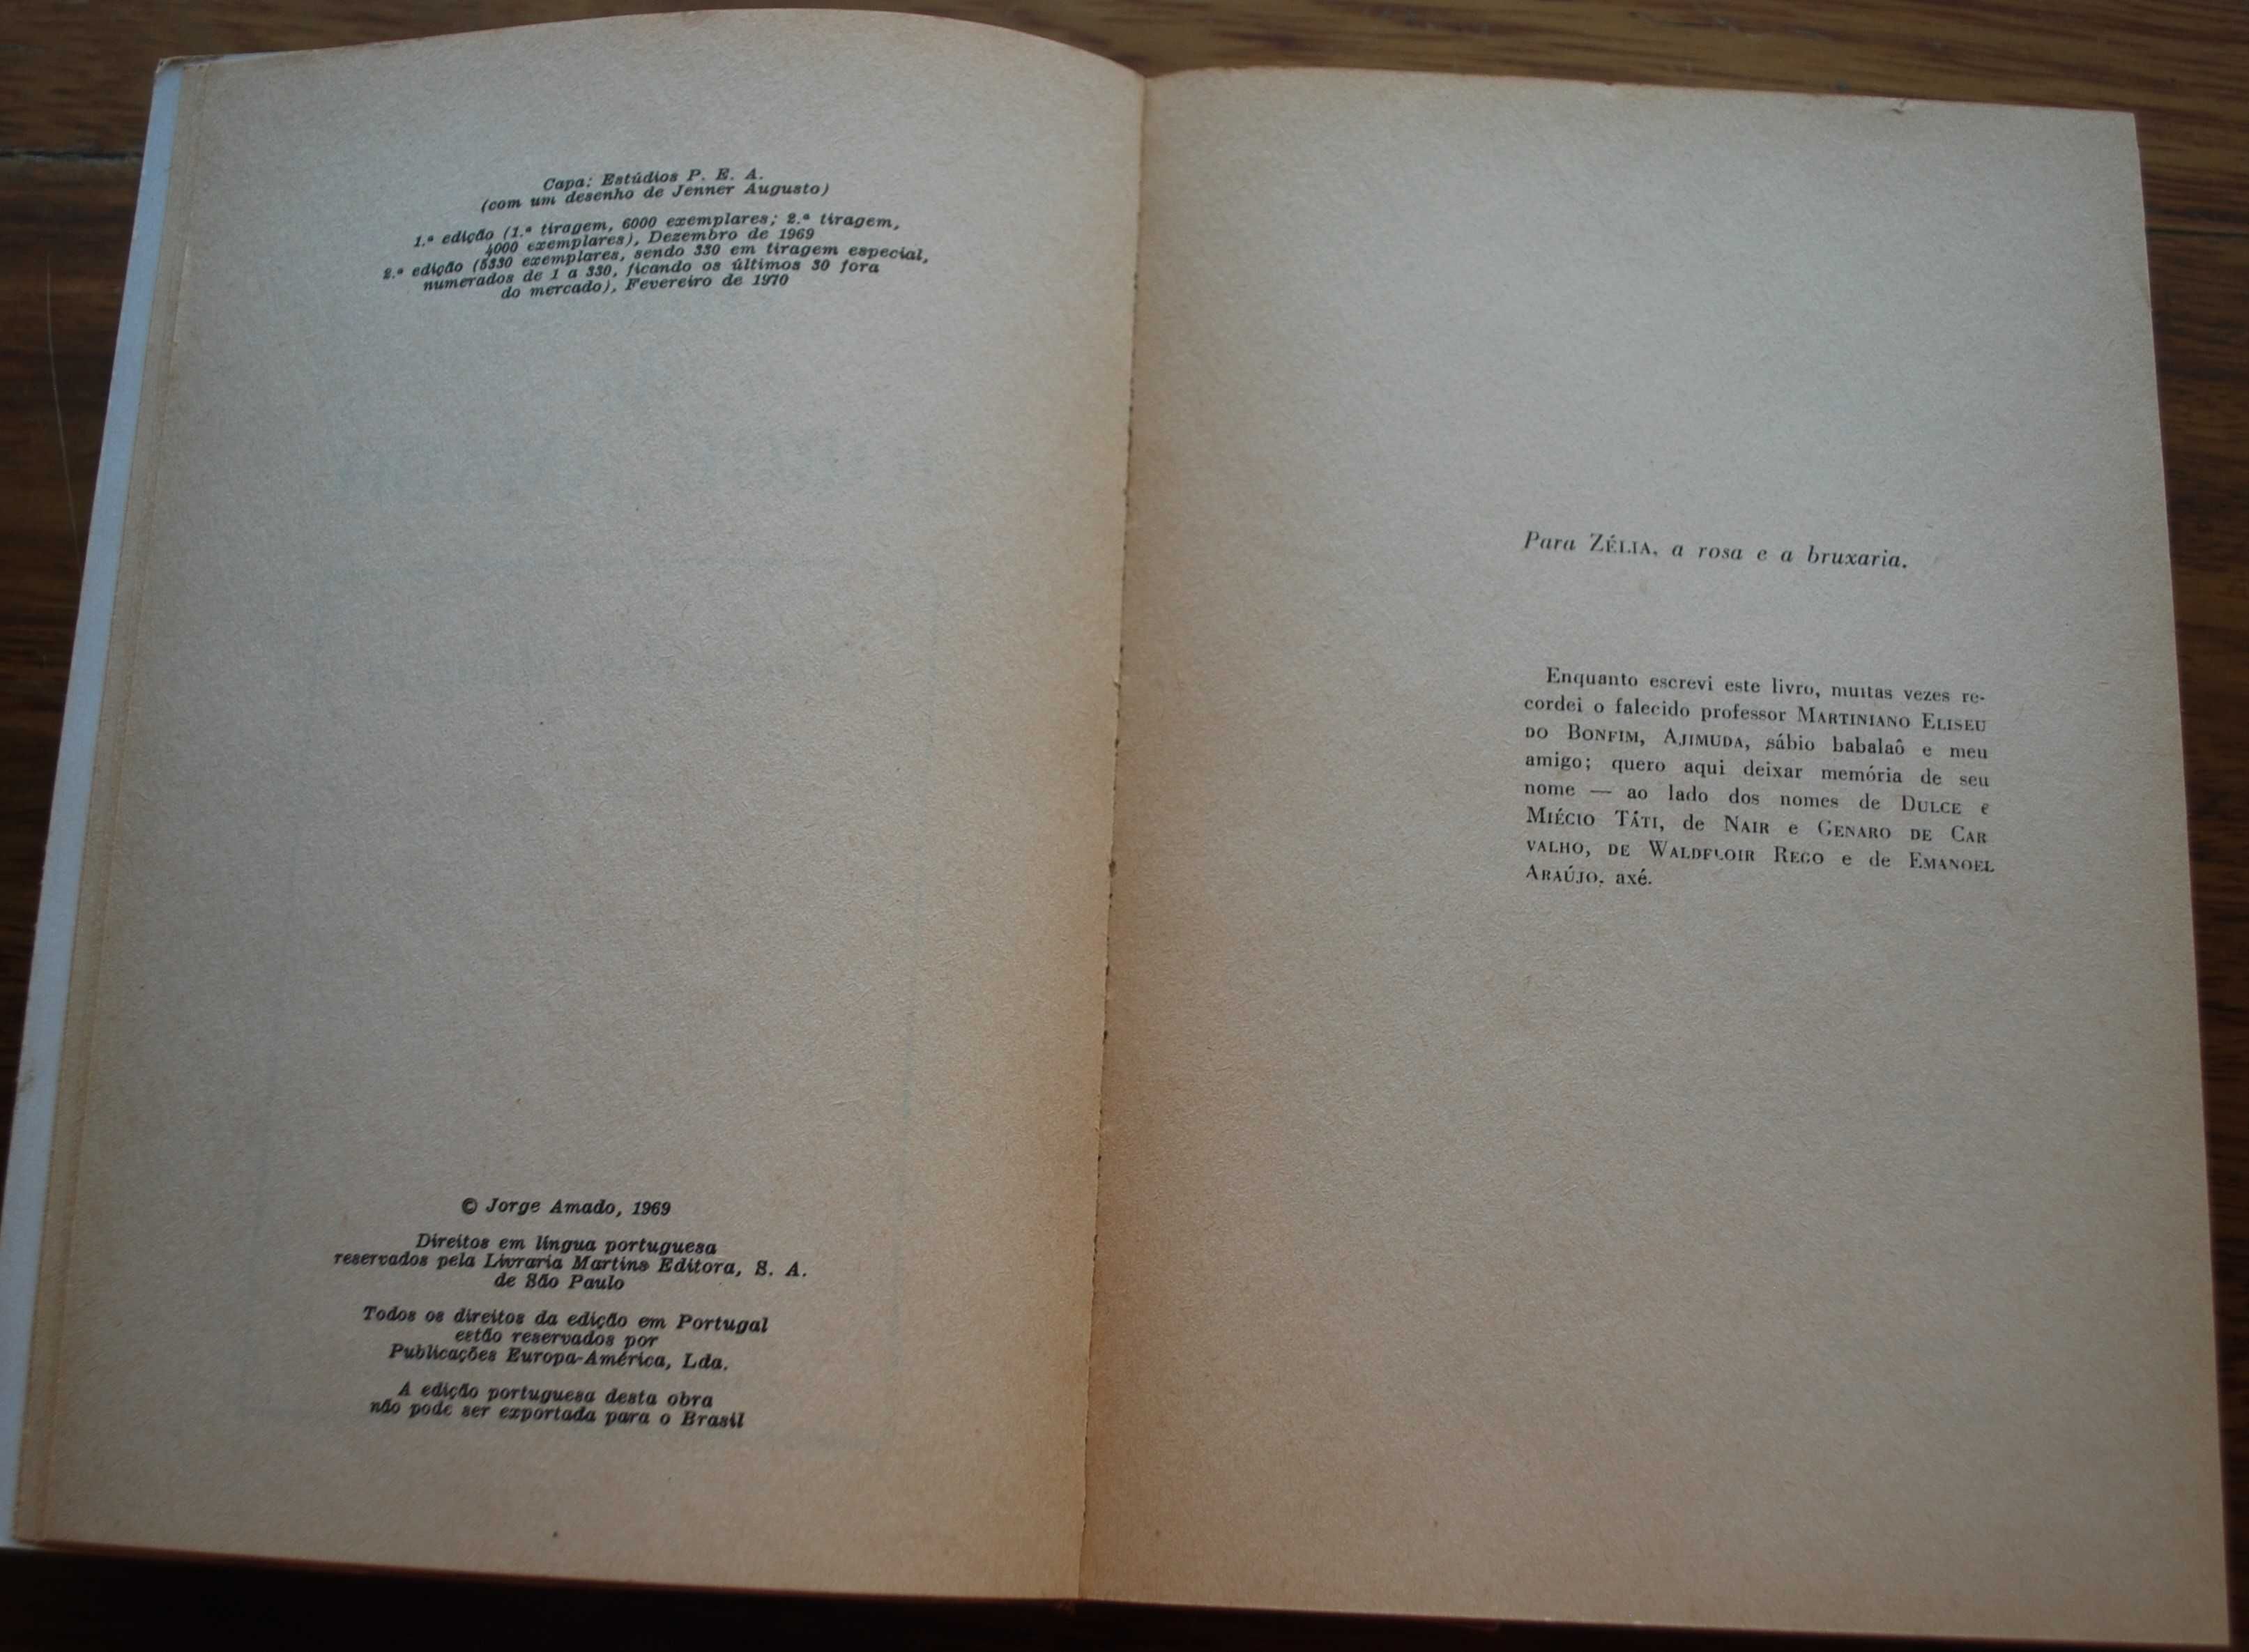 Tenda dos Milagres de Jorge Amado - Ano Edição 1970